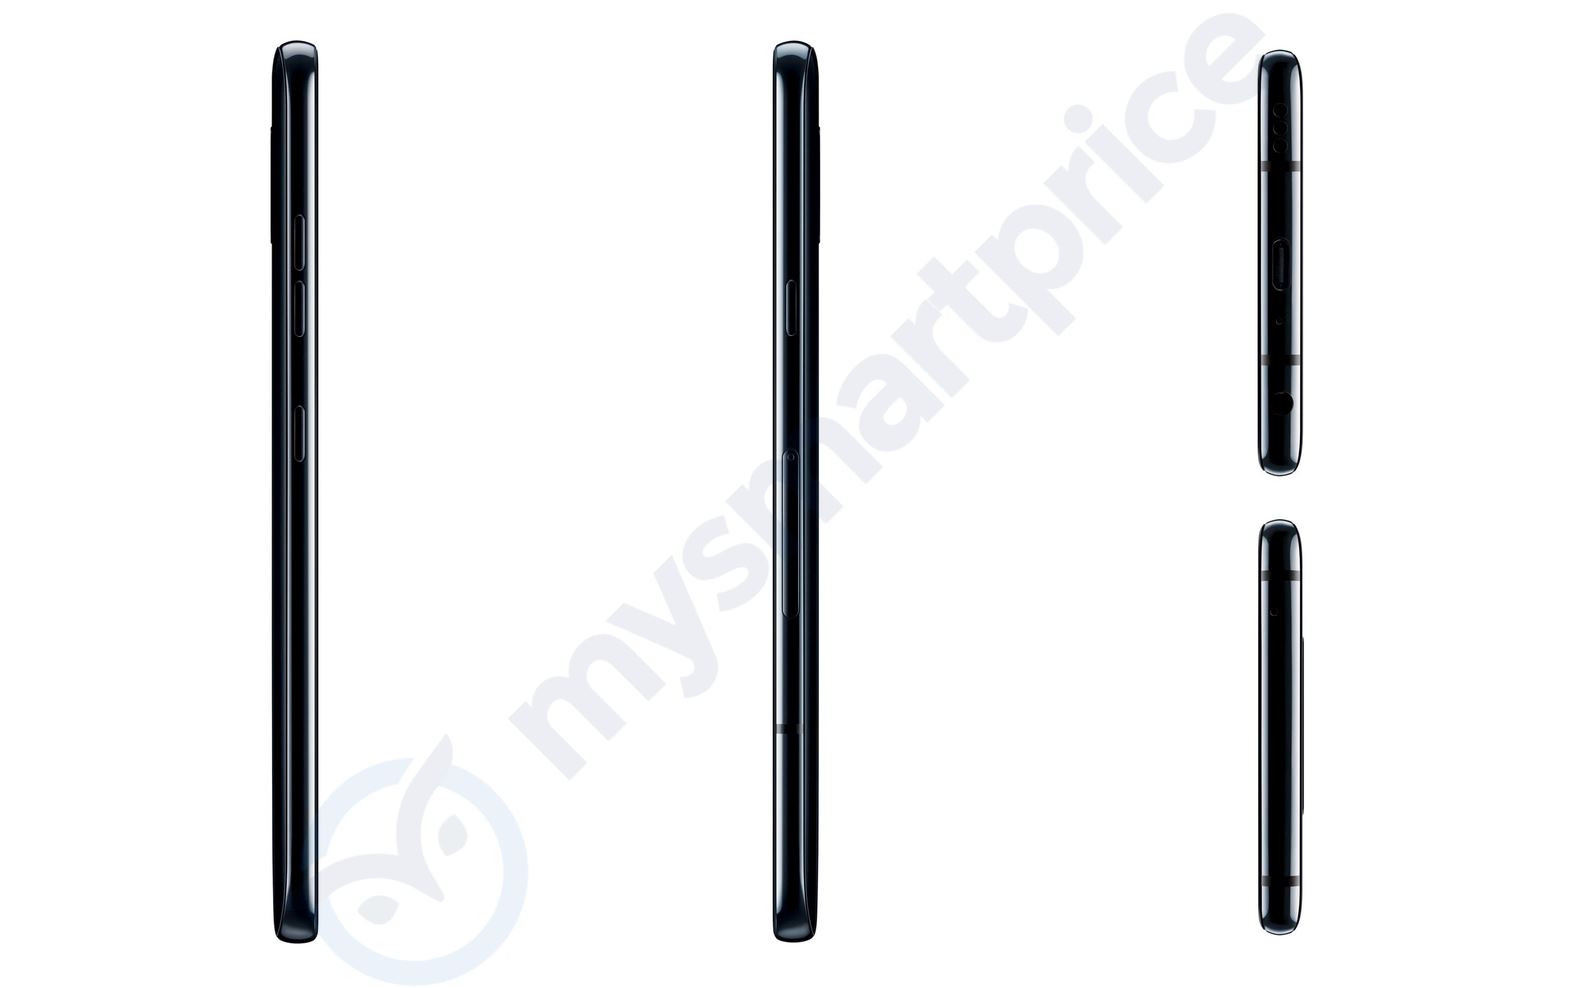 LG V40 ThinQ KOPIEREN iPhone X Huawei 2